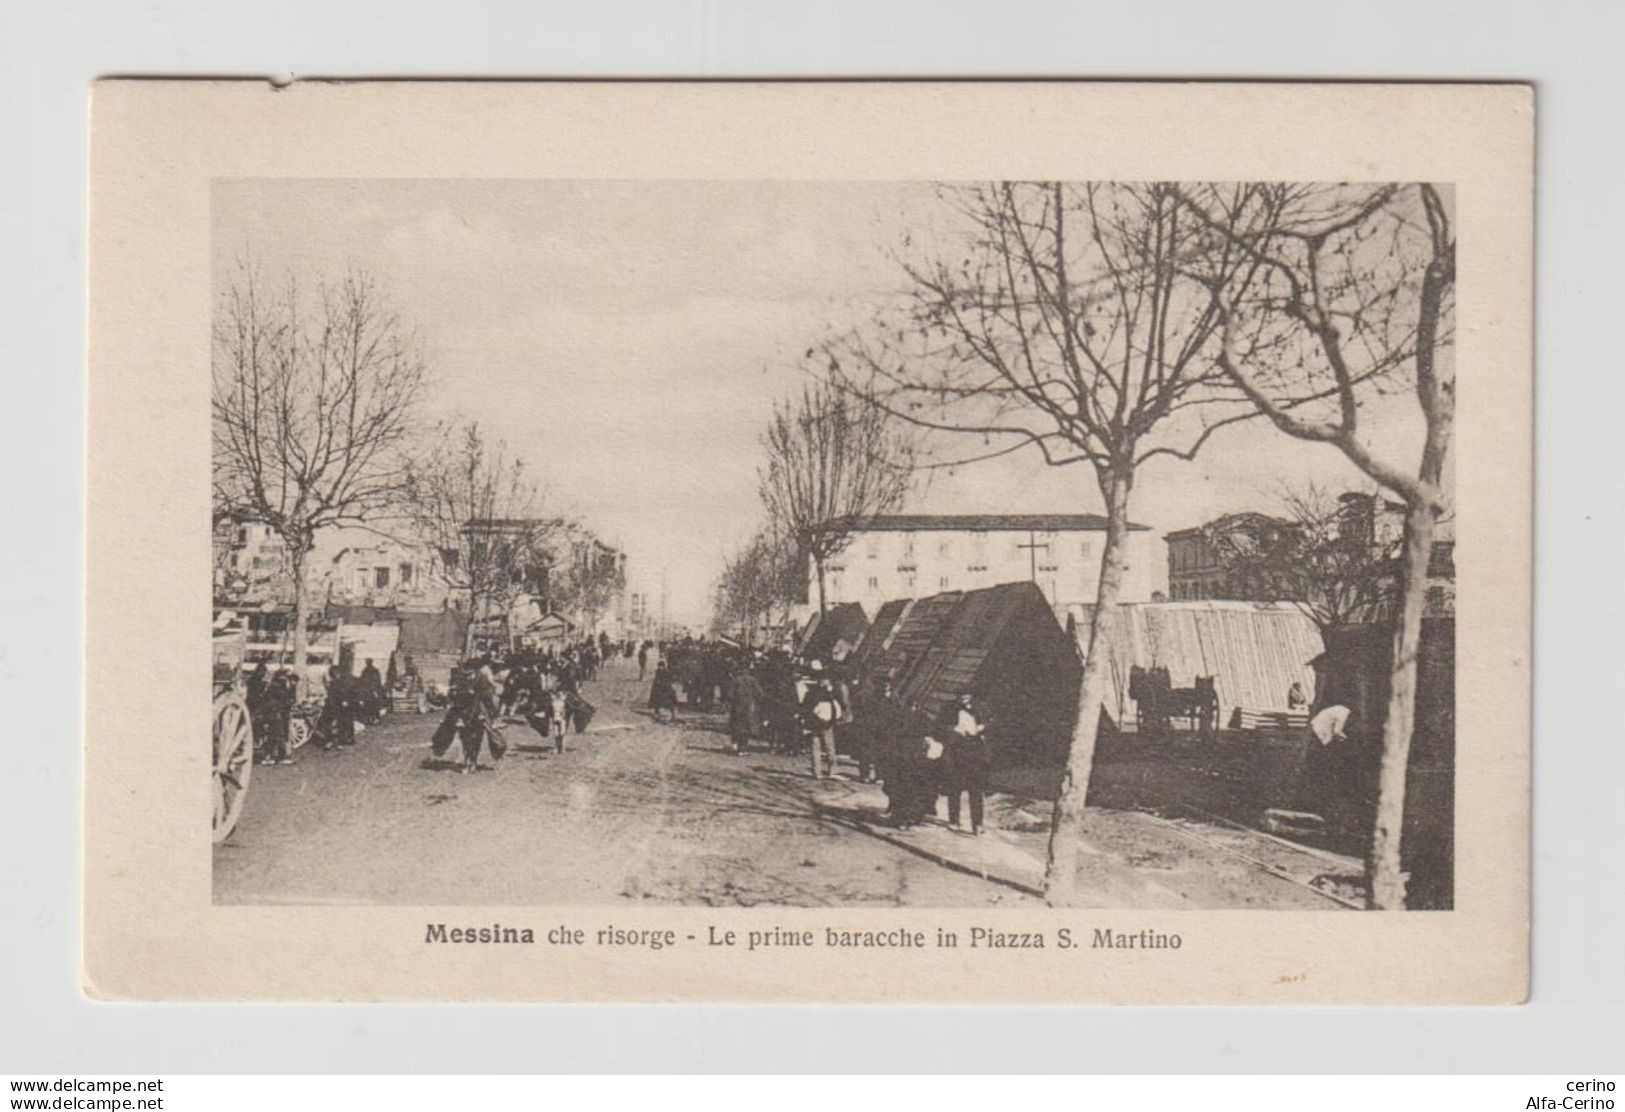 MESSINA  CHE  RISORGE:  LE  PRIME  BARACCHE  IN  PIAZZA  S. MARTINO  DOPO  IL  TERREMOTO  DEL  1908  -  FOTO  -  FP - Rampen